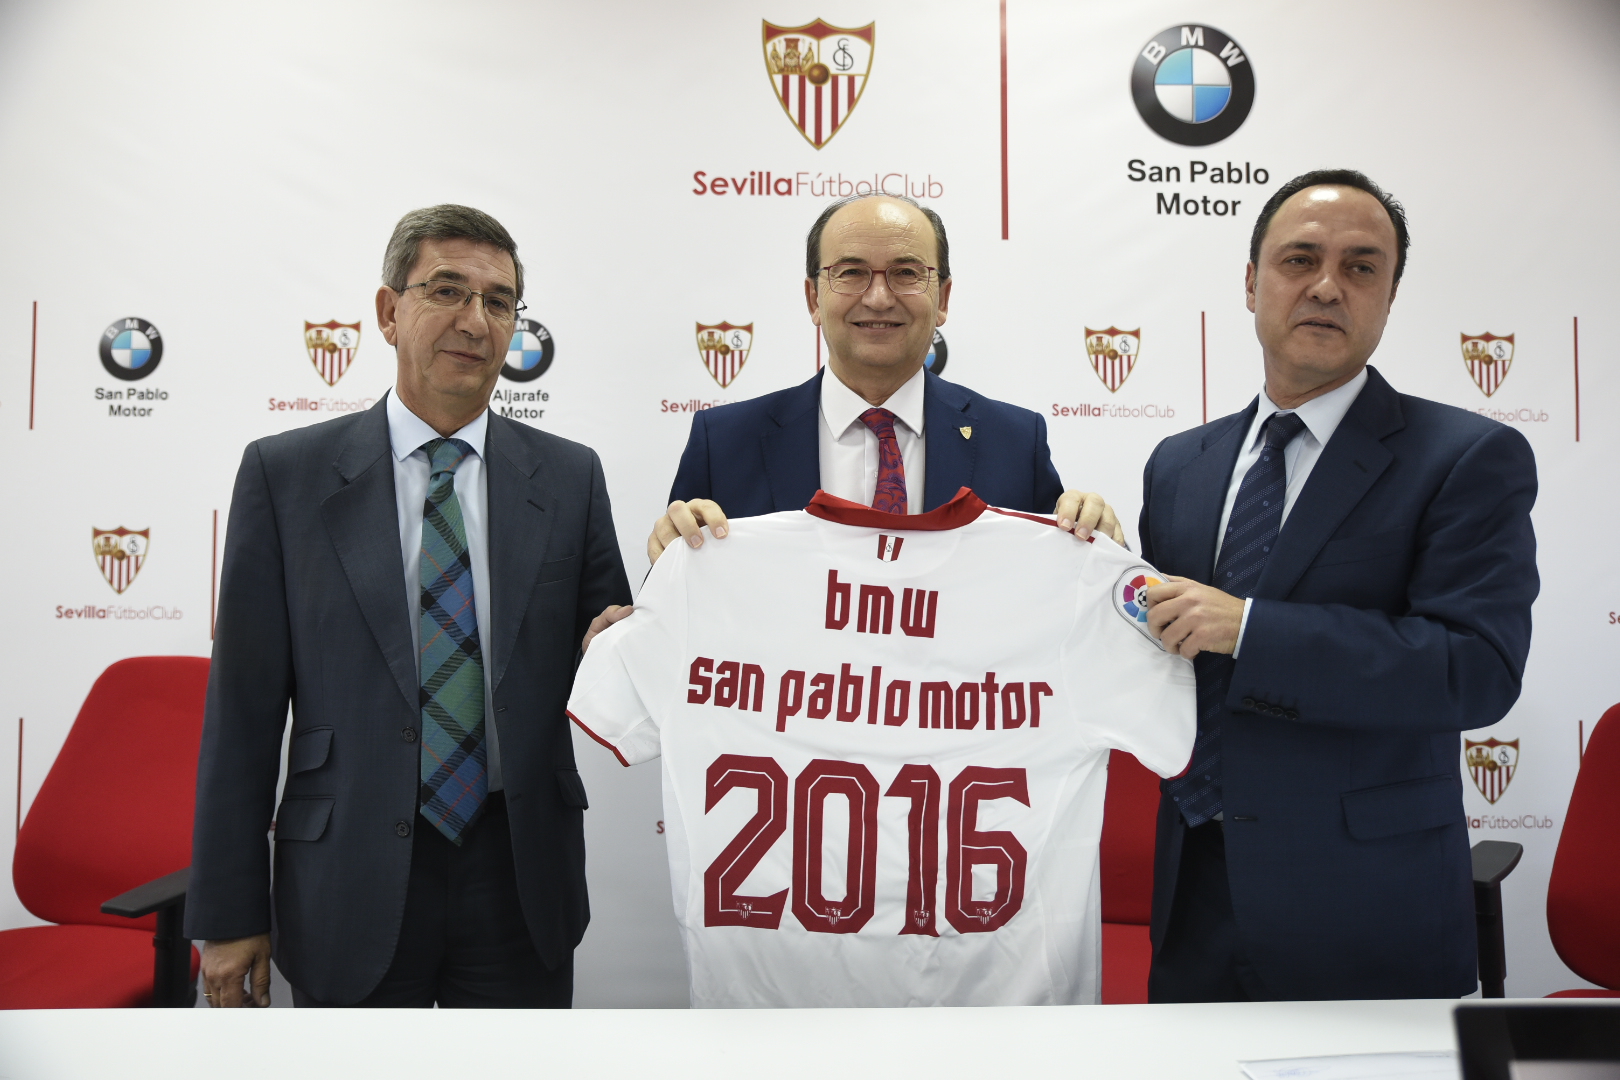 Nuevo acuerdo de patrocinio entre Sevilla FC y BMW